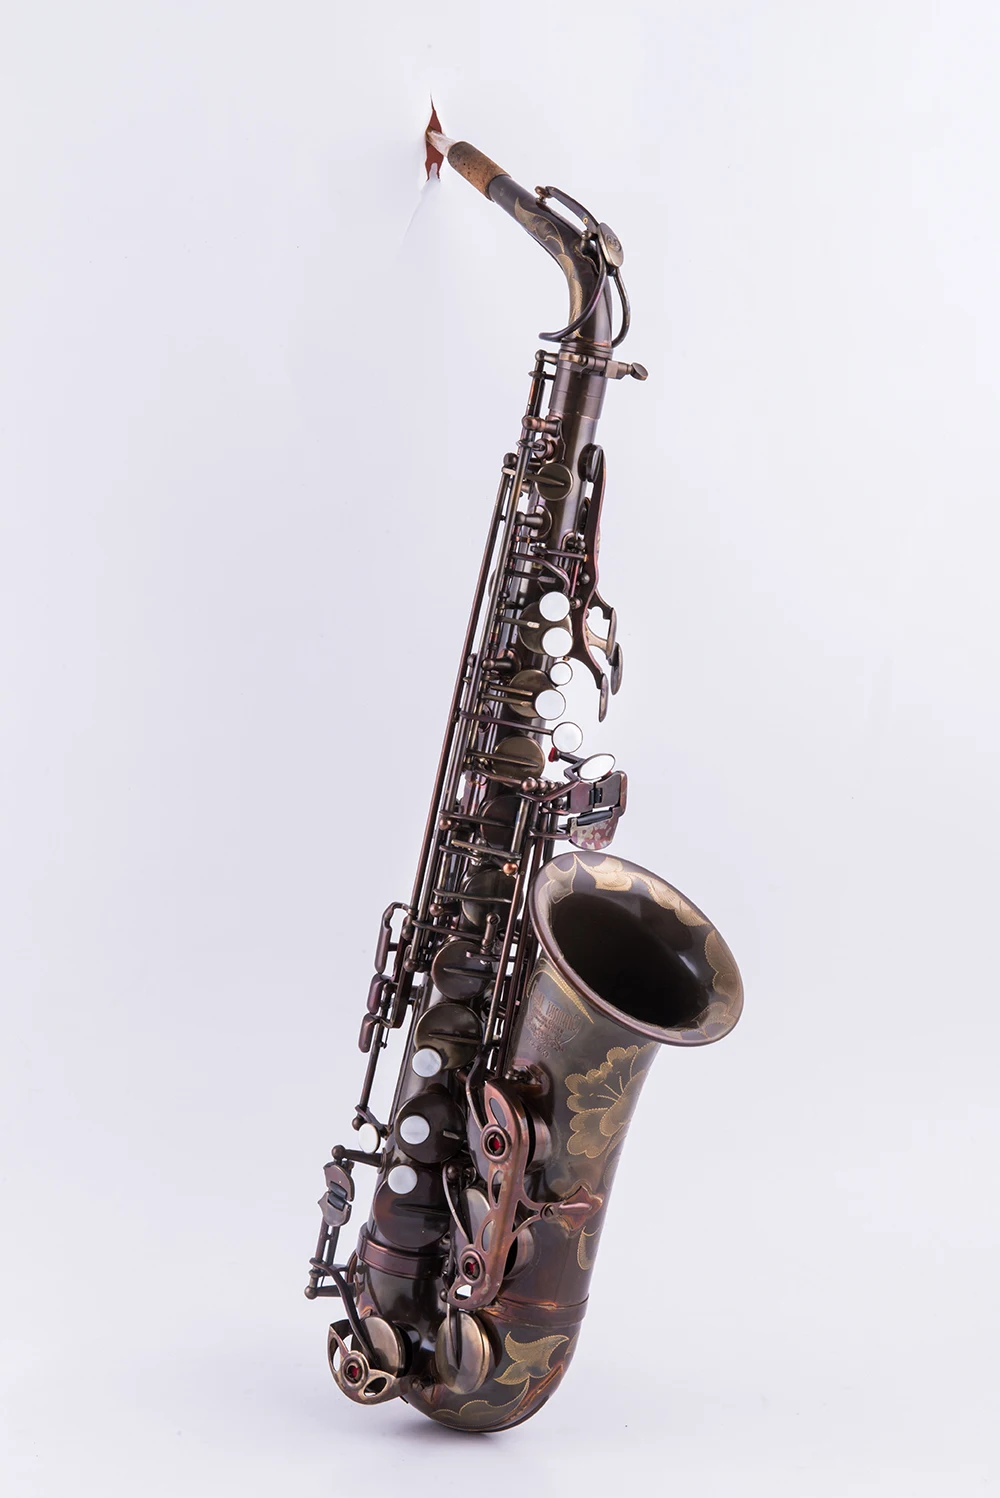 Альт саксофон LAIIMAN Mark VI Eb античный медный альт-саксофон профессиональный игровой духовой инструмент с мундштуком